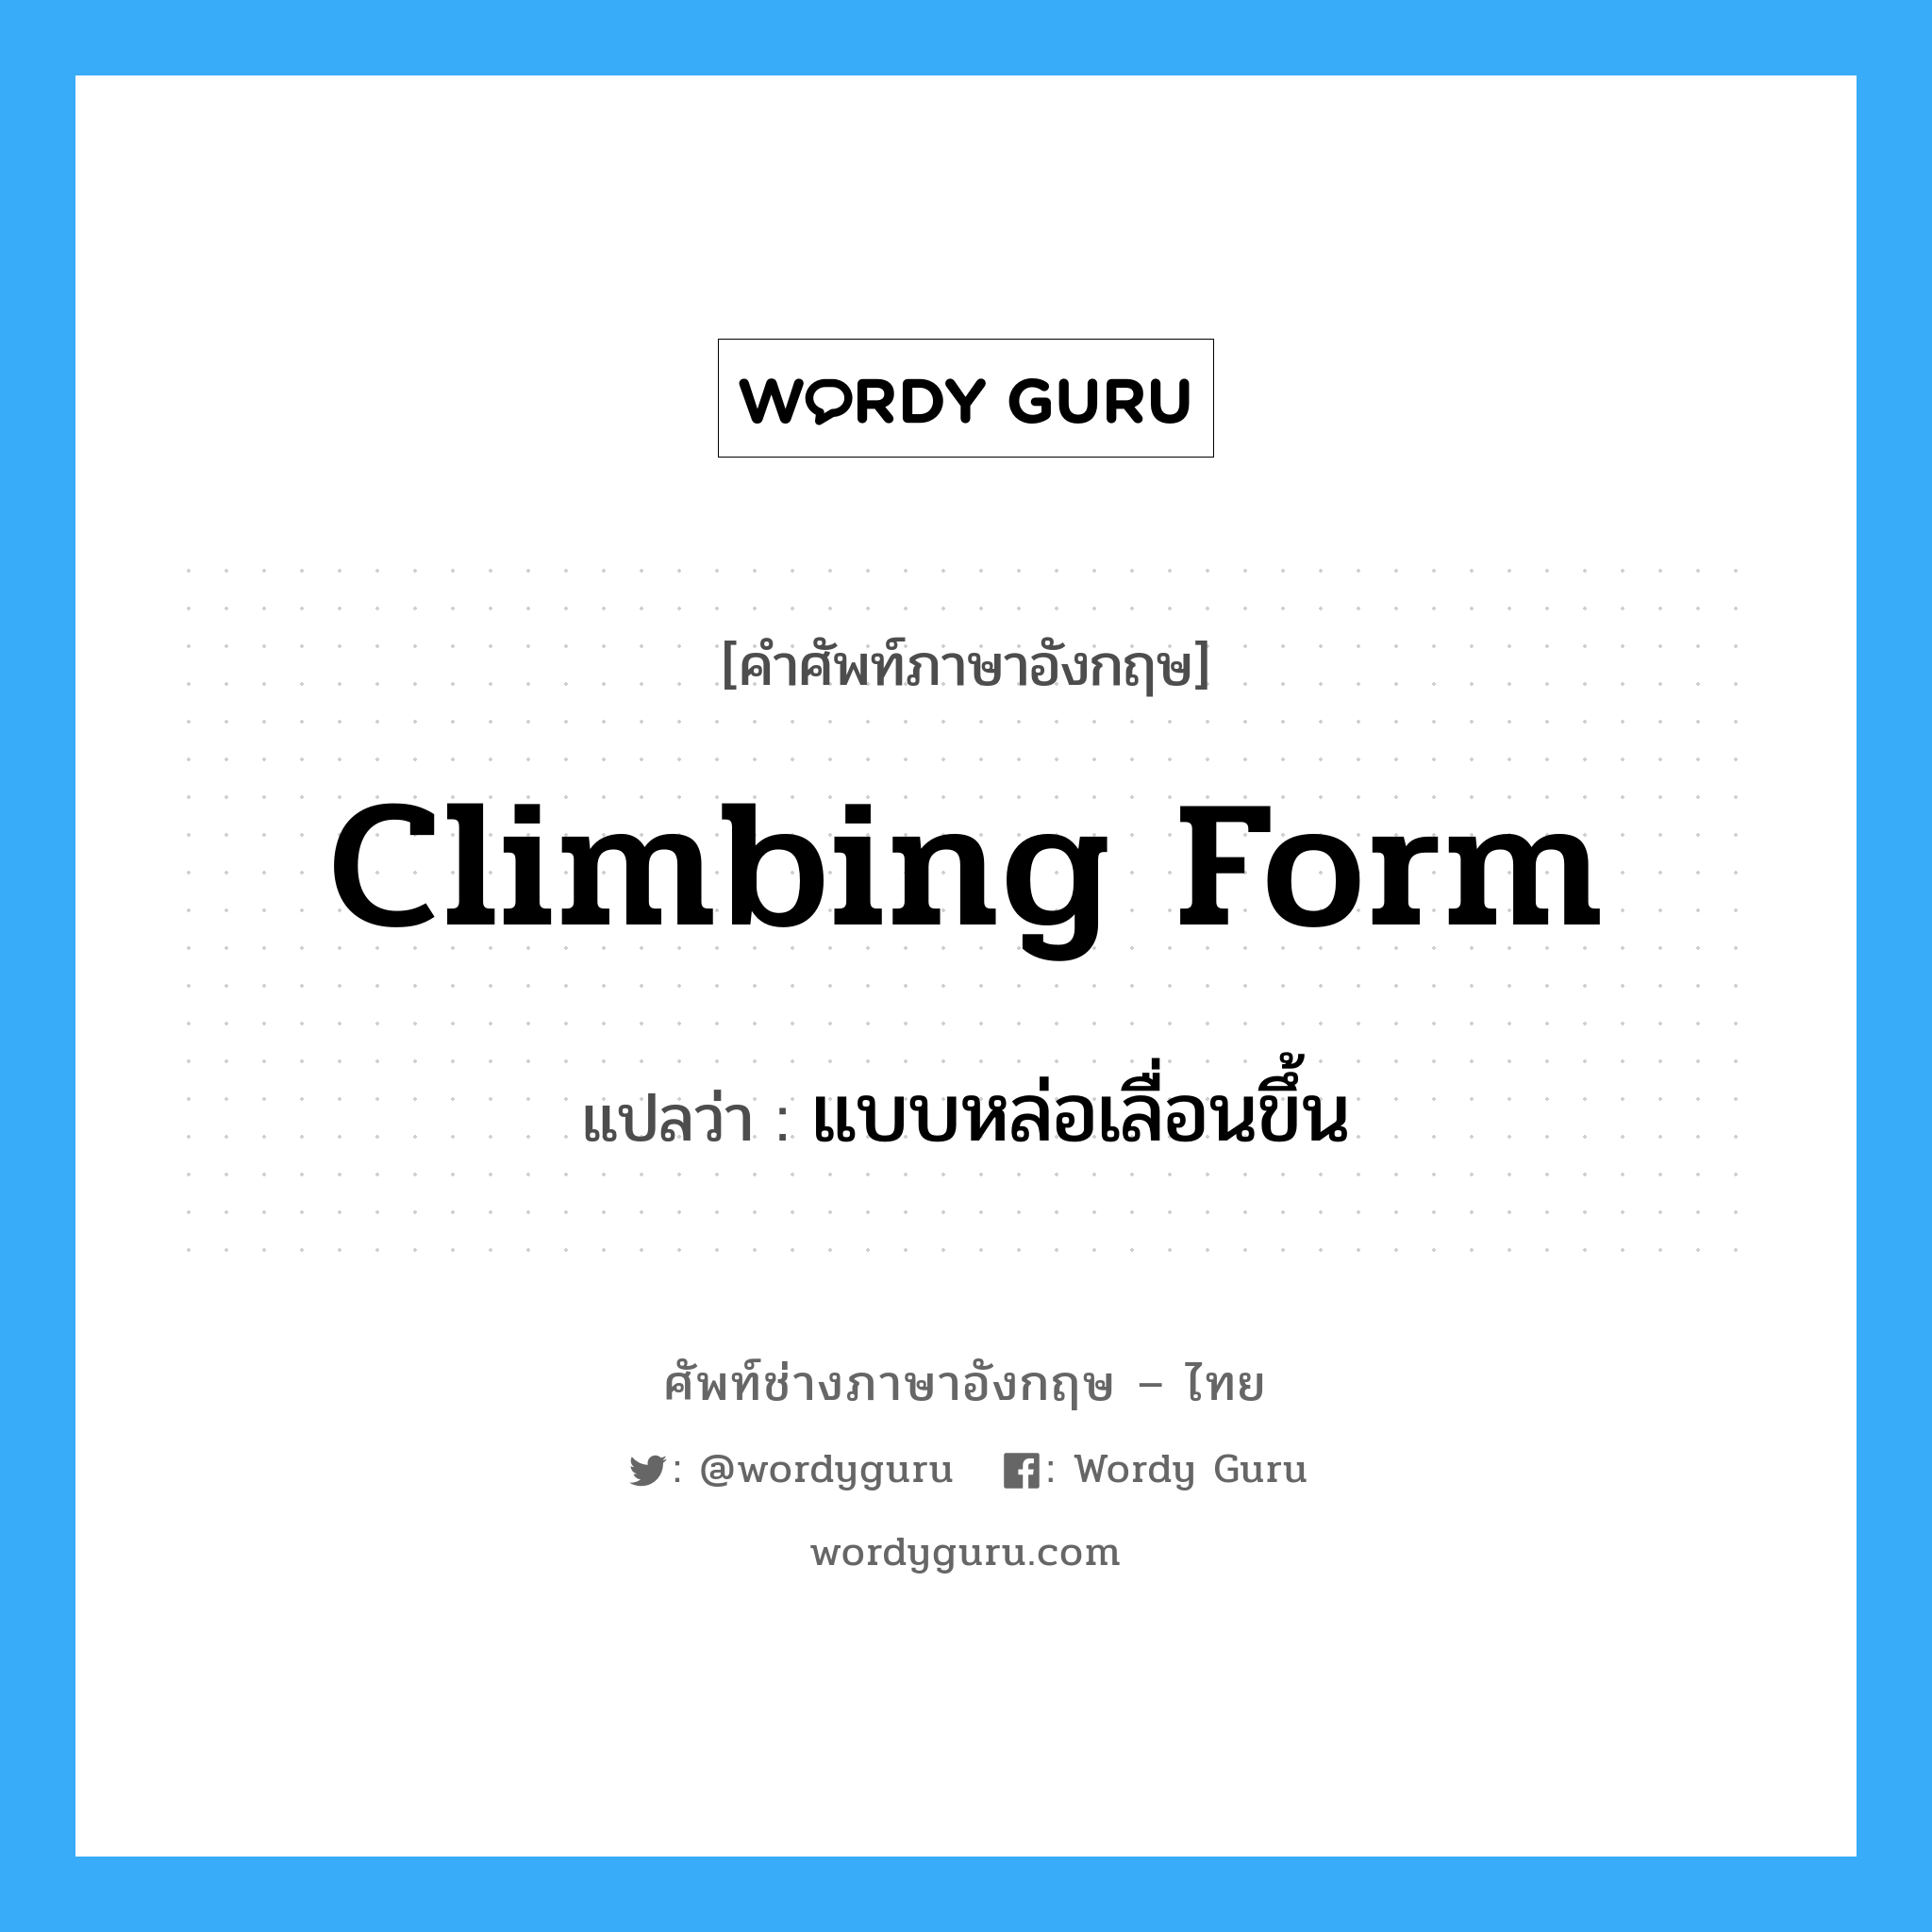 แบบหล่อเลื่อนขึ้น ภาษาอังกฤษ?, คำศัพท์ช่างภาษาอังกฤษ - ไทย แบบหล่อเลื่อนขึ้น คำศัพท์ภาษาอังกฤษ แบบหล่อเลื่อนขึ้น แปลว่า climbing form